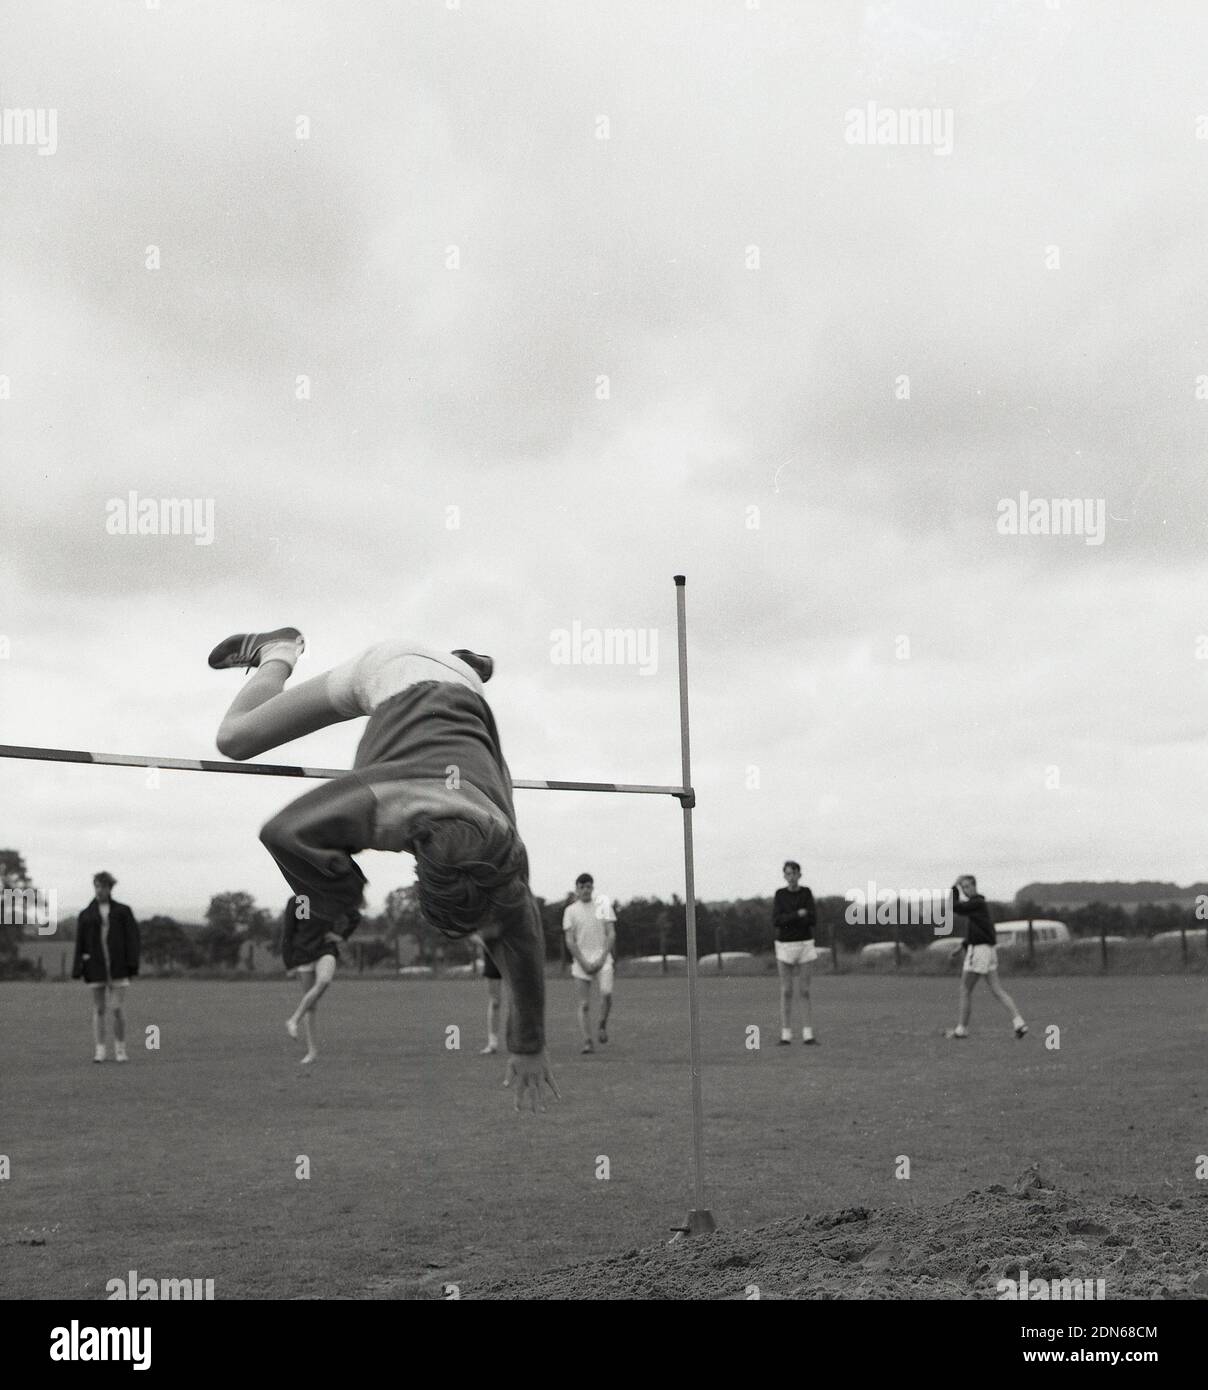 1960s, historique, un adolescent effectuant le saut à la hauteur lors d'une journée de sport à l'école secondaire, en plein air en utilisant la version de plongée de la méthode de saut à la vitesse, avec sa tête et les bras passant par le bar en premier, suivi de son tronc et des jambes, Fife, Écosse, Royaume-Uni. La technique de la selle était le style principal dans le saut en hauteur avant le développement de la Fosbury Flop. Médaillé d'or aux Jeux Olympiques de 1964, Valeriy Brumel a utilisé la variante de plongée de la selle. Banque D'Images